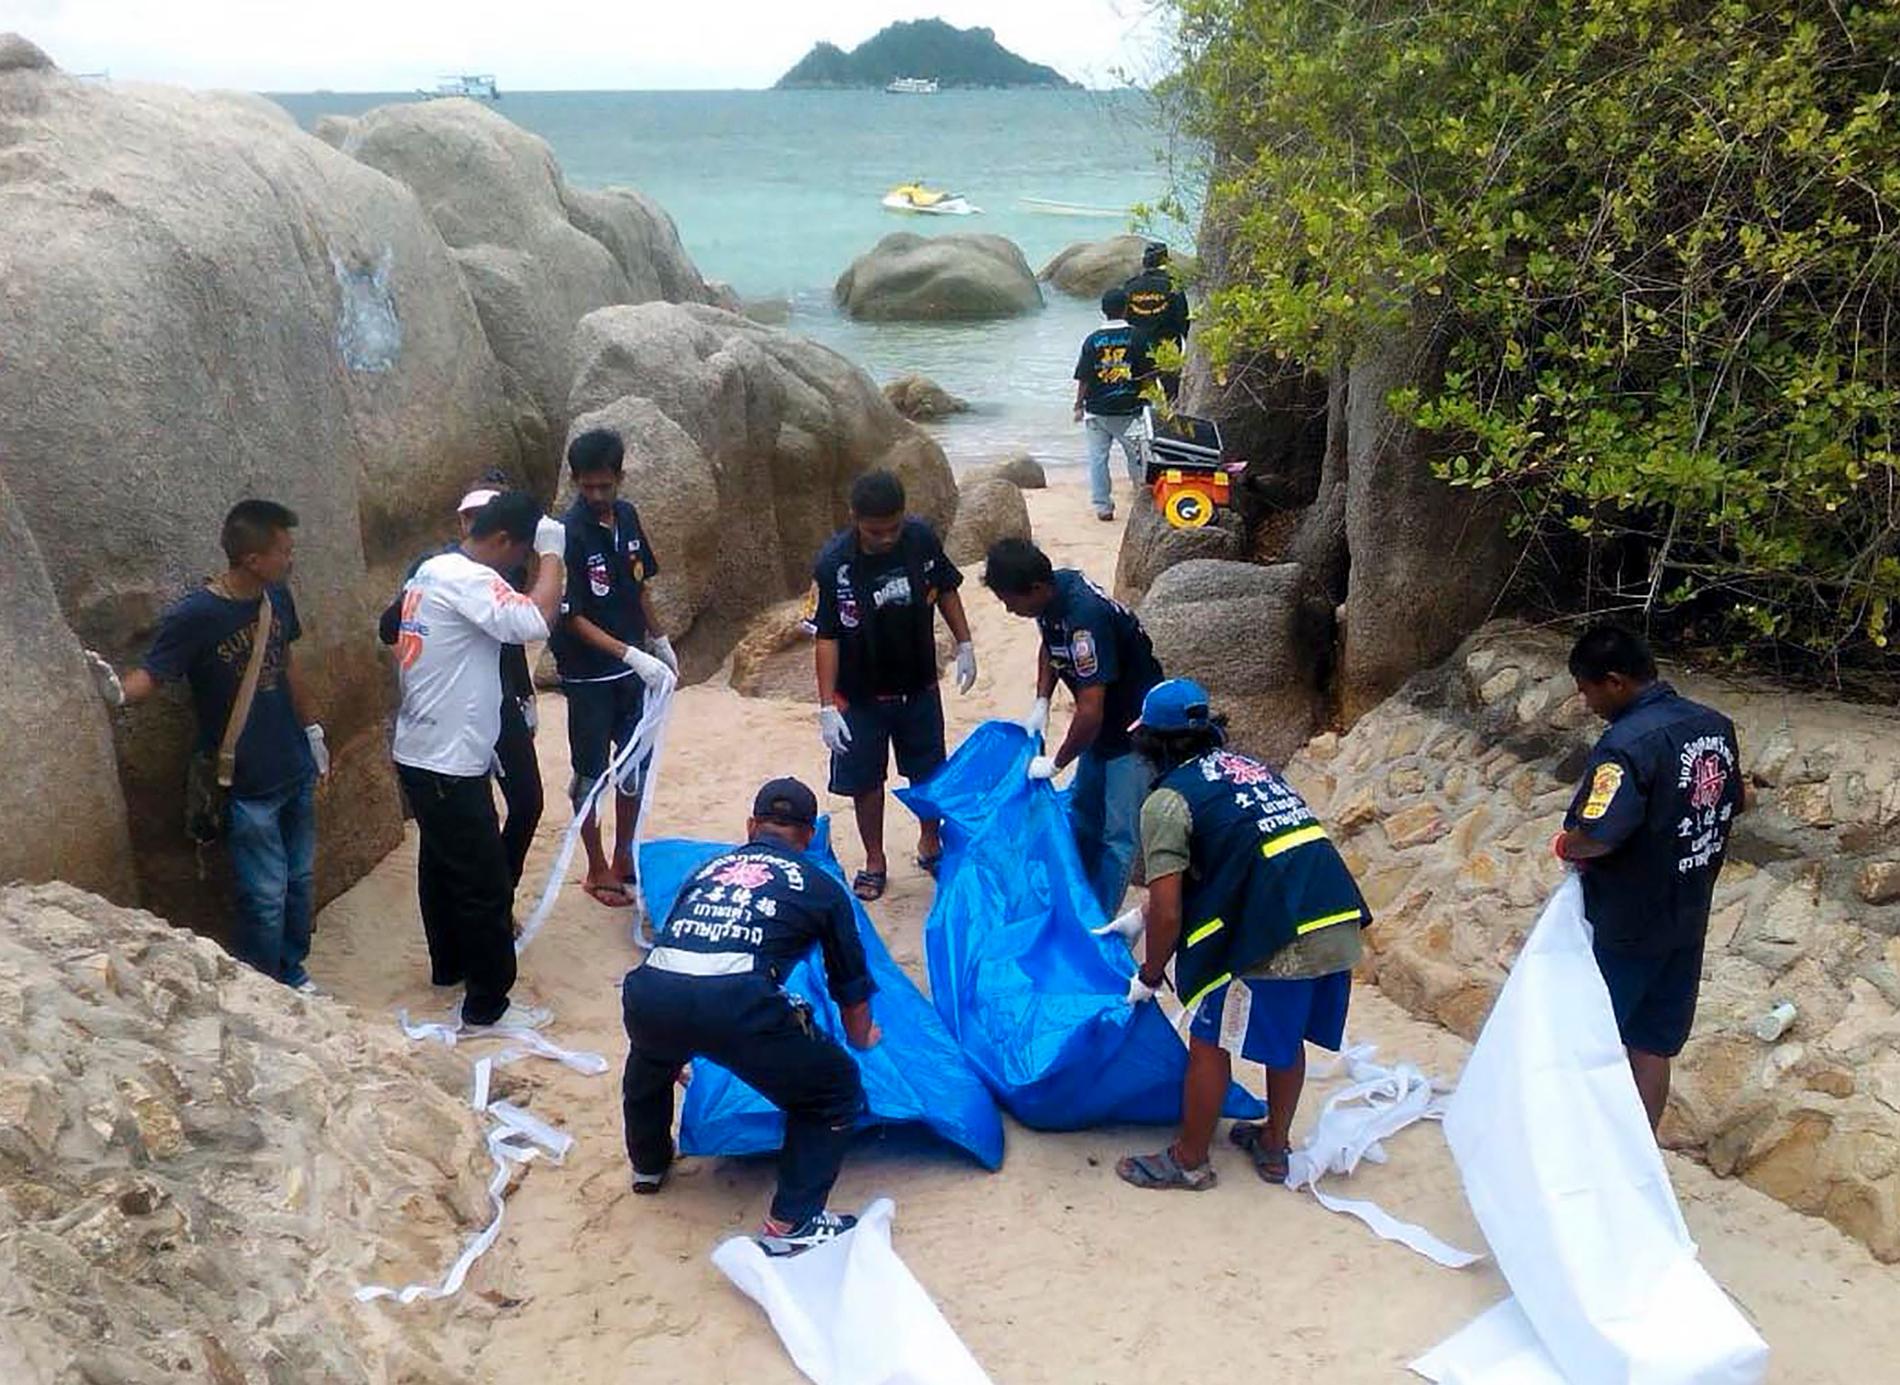 Hannah Witheridge, 23, och David Miller, 24, hittades halvnakna och döda på en strand på ön Koh Tao i Thailand.